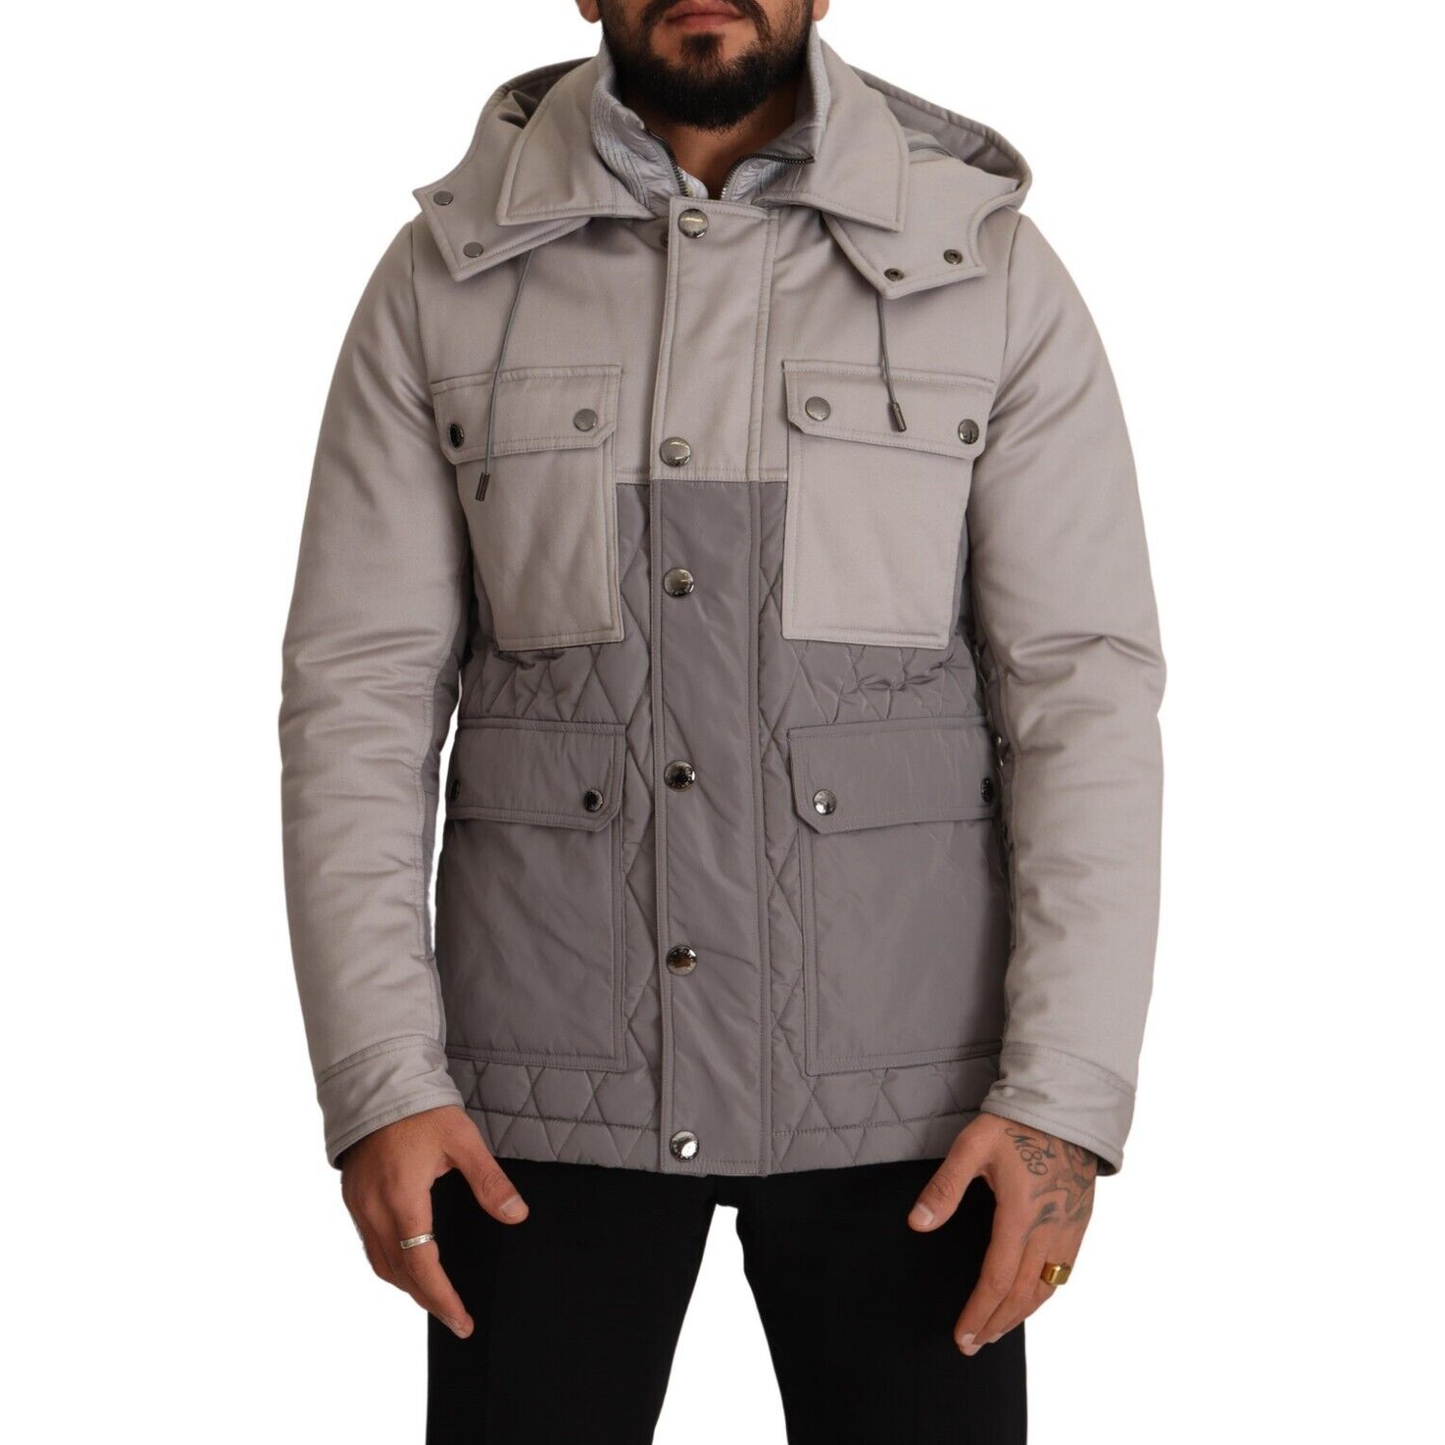 Dolce & Gabbana Elegant Lightweight Gray Windbreaker Jacket gray-cotton-windbreaker-hooded-parka-jacket s-l1600-46-a87f9851-1da.png